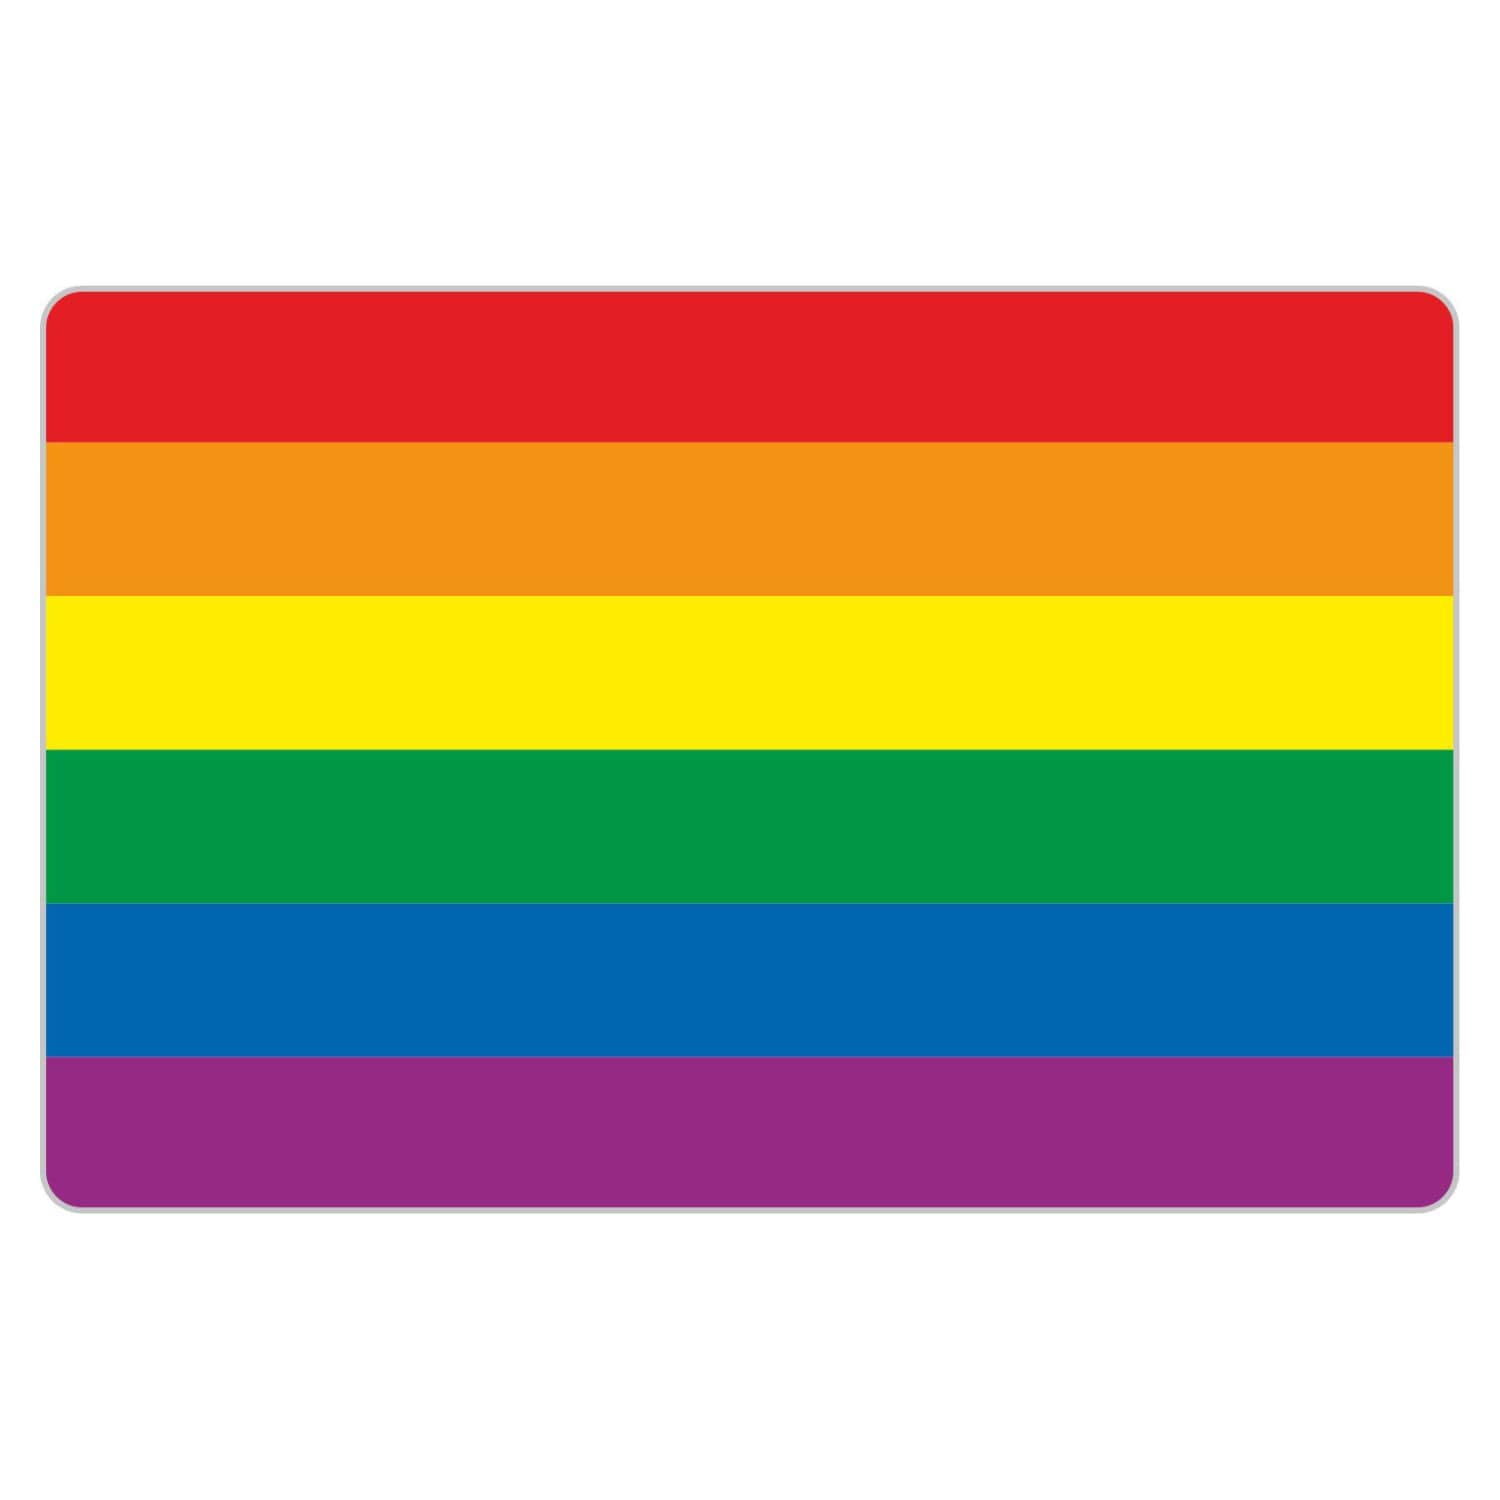 deformaze Sticker Gay Lesbian Pride Regenbogen Rainbow Flag Aufkleber LGBT Flagge 11,5 x 7,5 cm Selbstklebend KFZ Auto Scheibe UV Wetterfest von deformaze